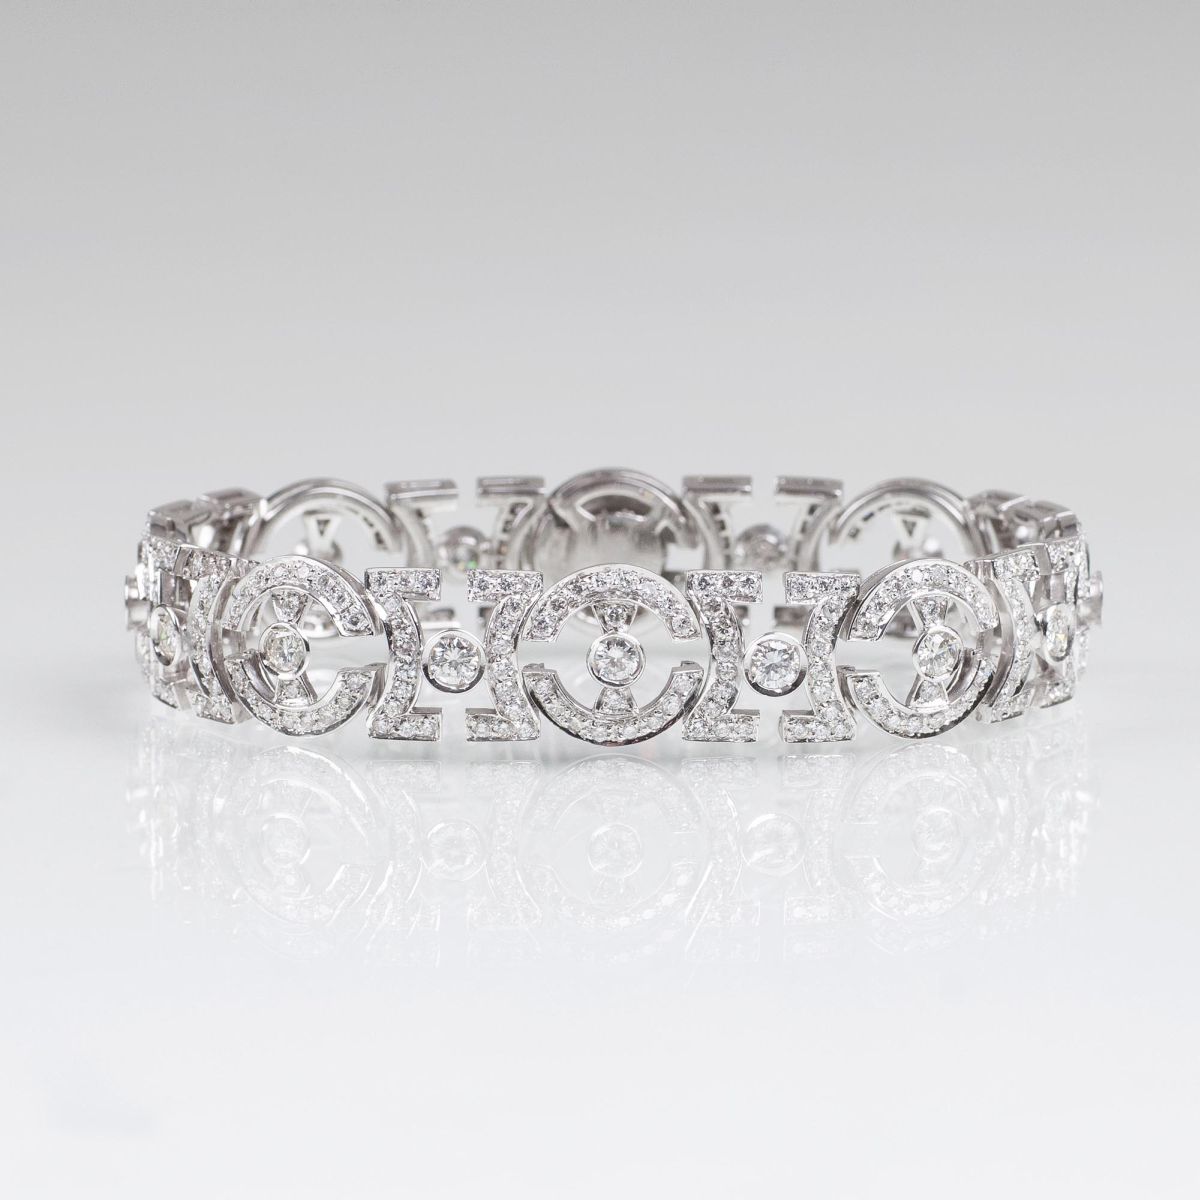 A fine Diamond Bracelet in Vintage Style - image 2